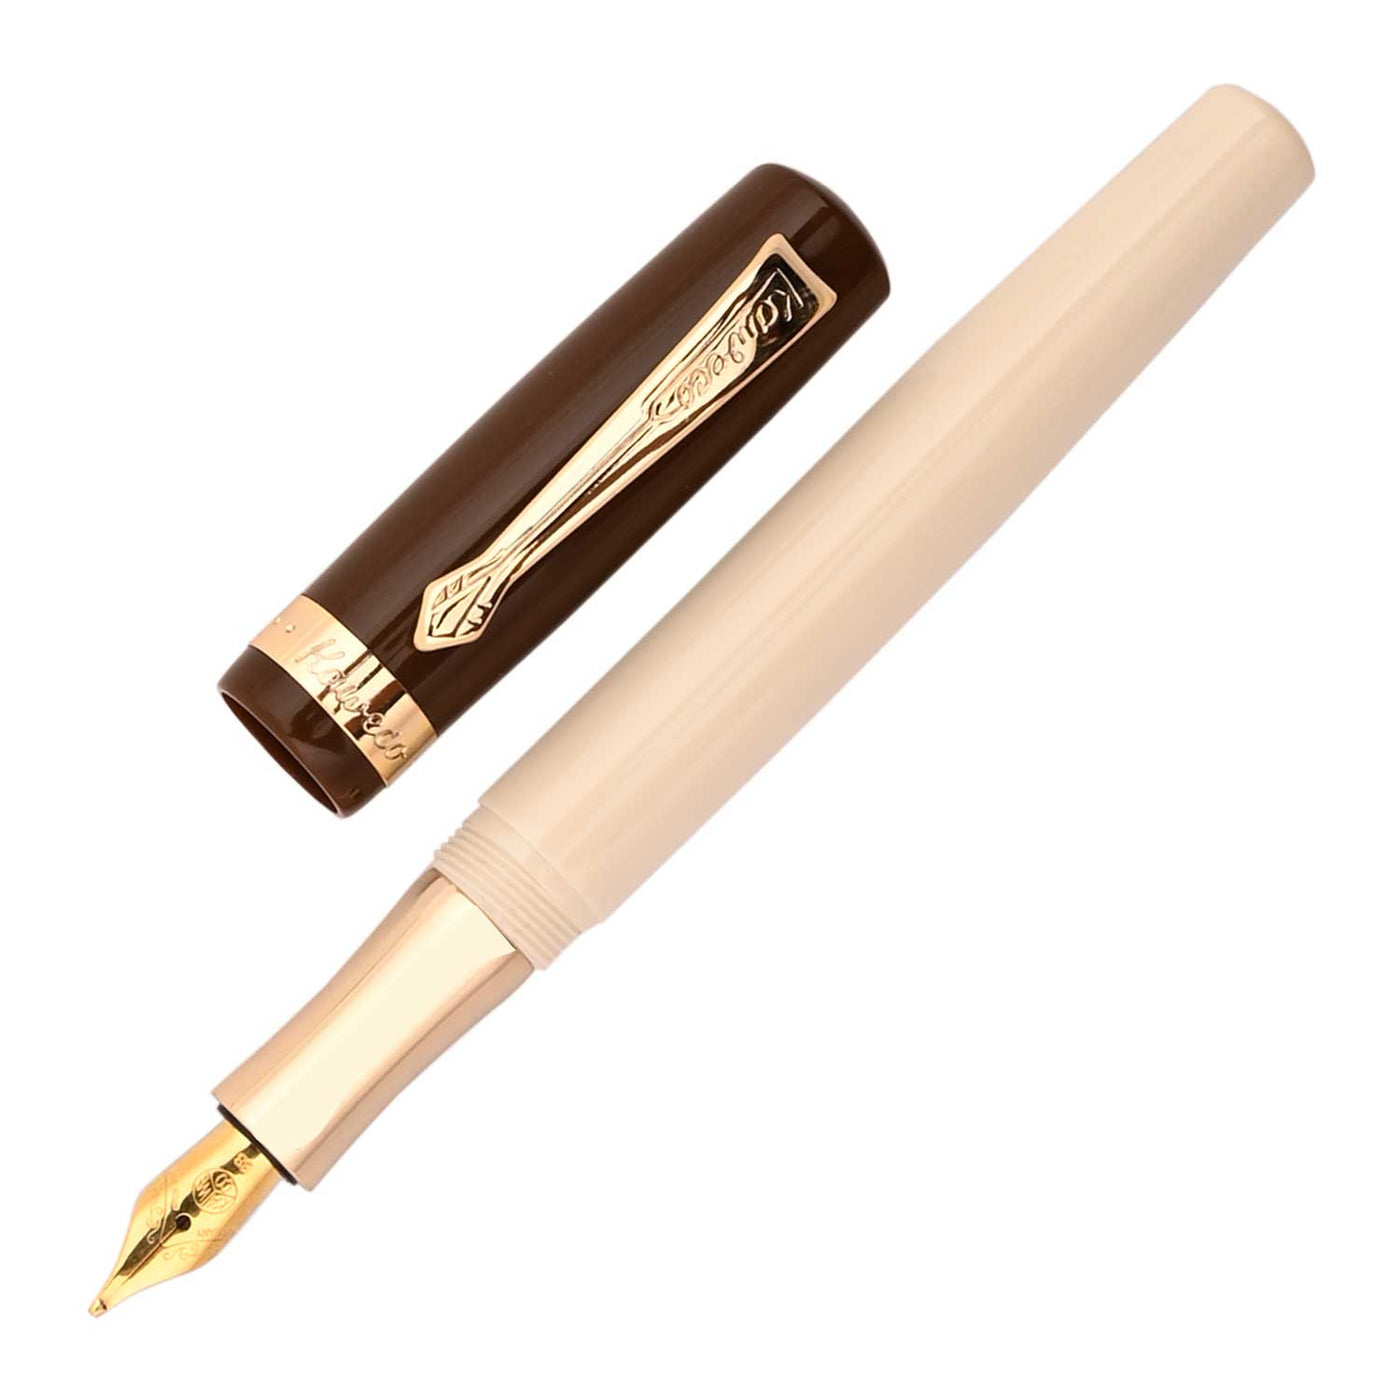 Faber Castell Magic Pen 12'S/20'S